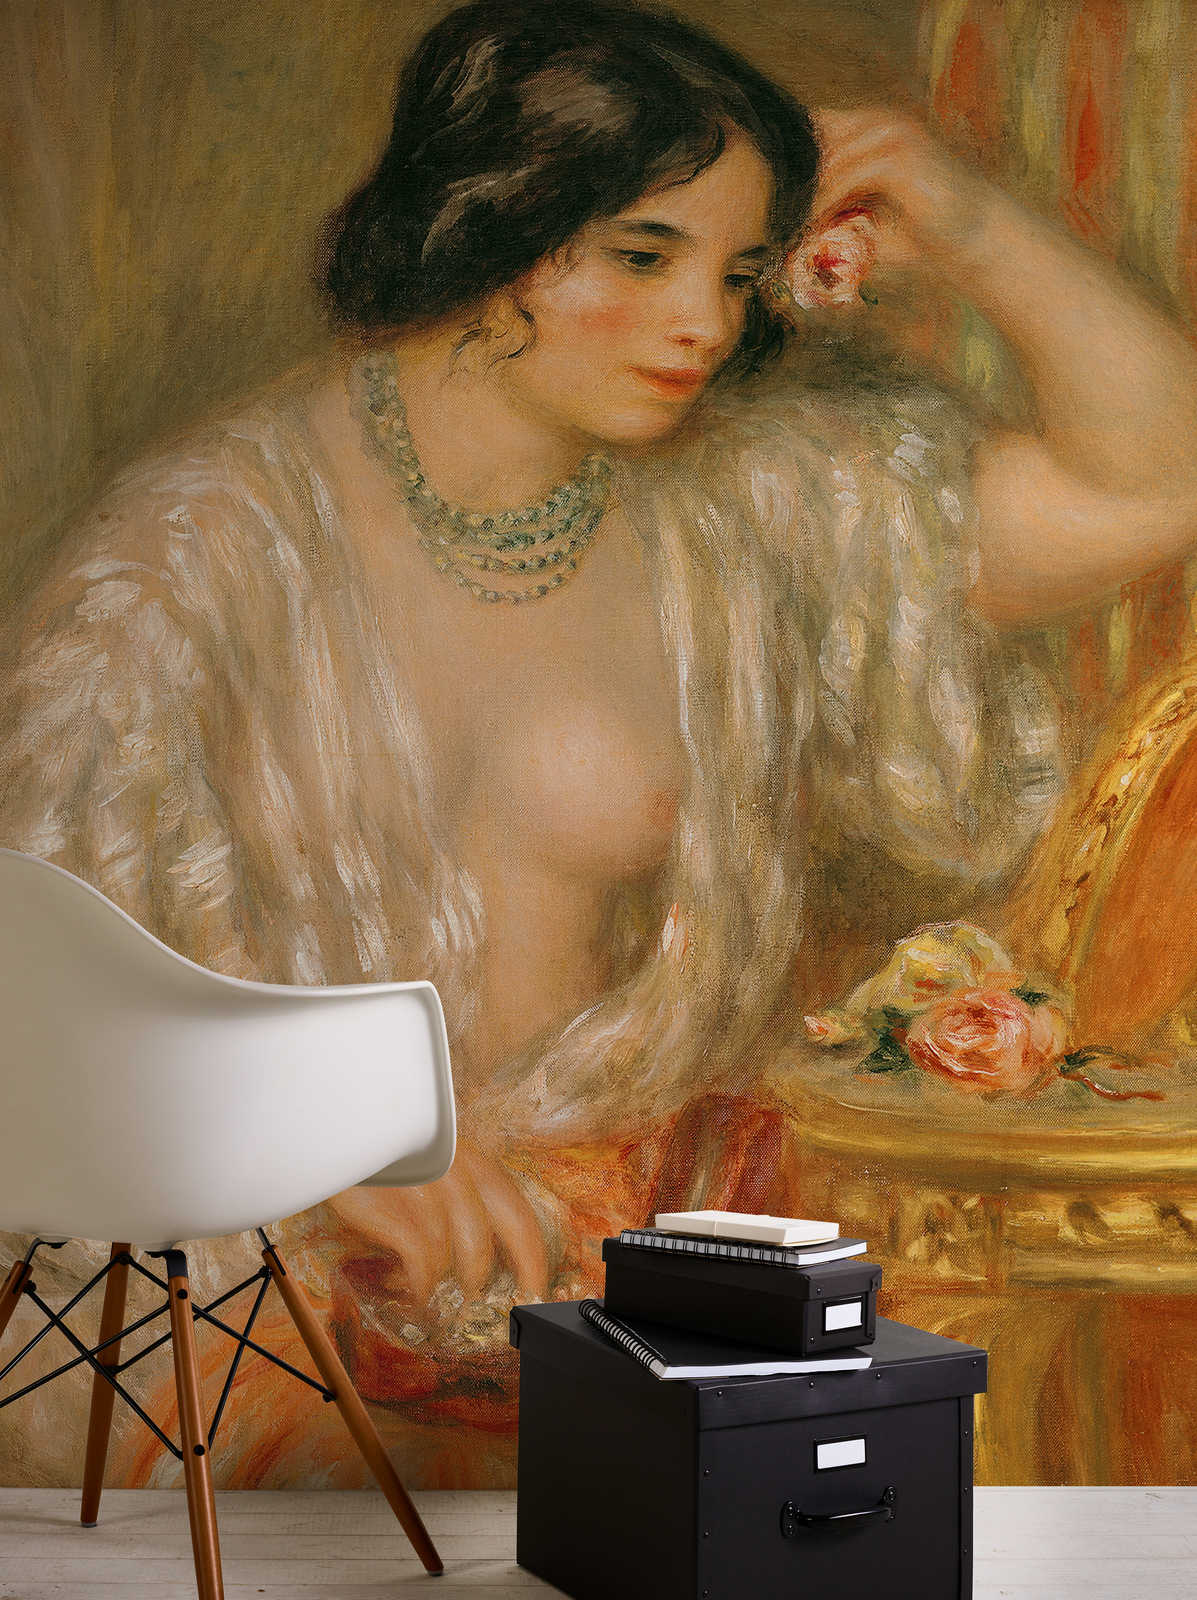             Fototapete "Gabrielle mit Schmuckkästchen" von Pierre Auguste Renoir
        